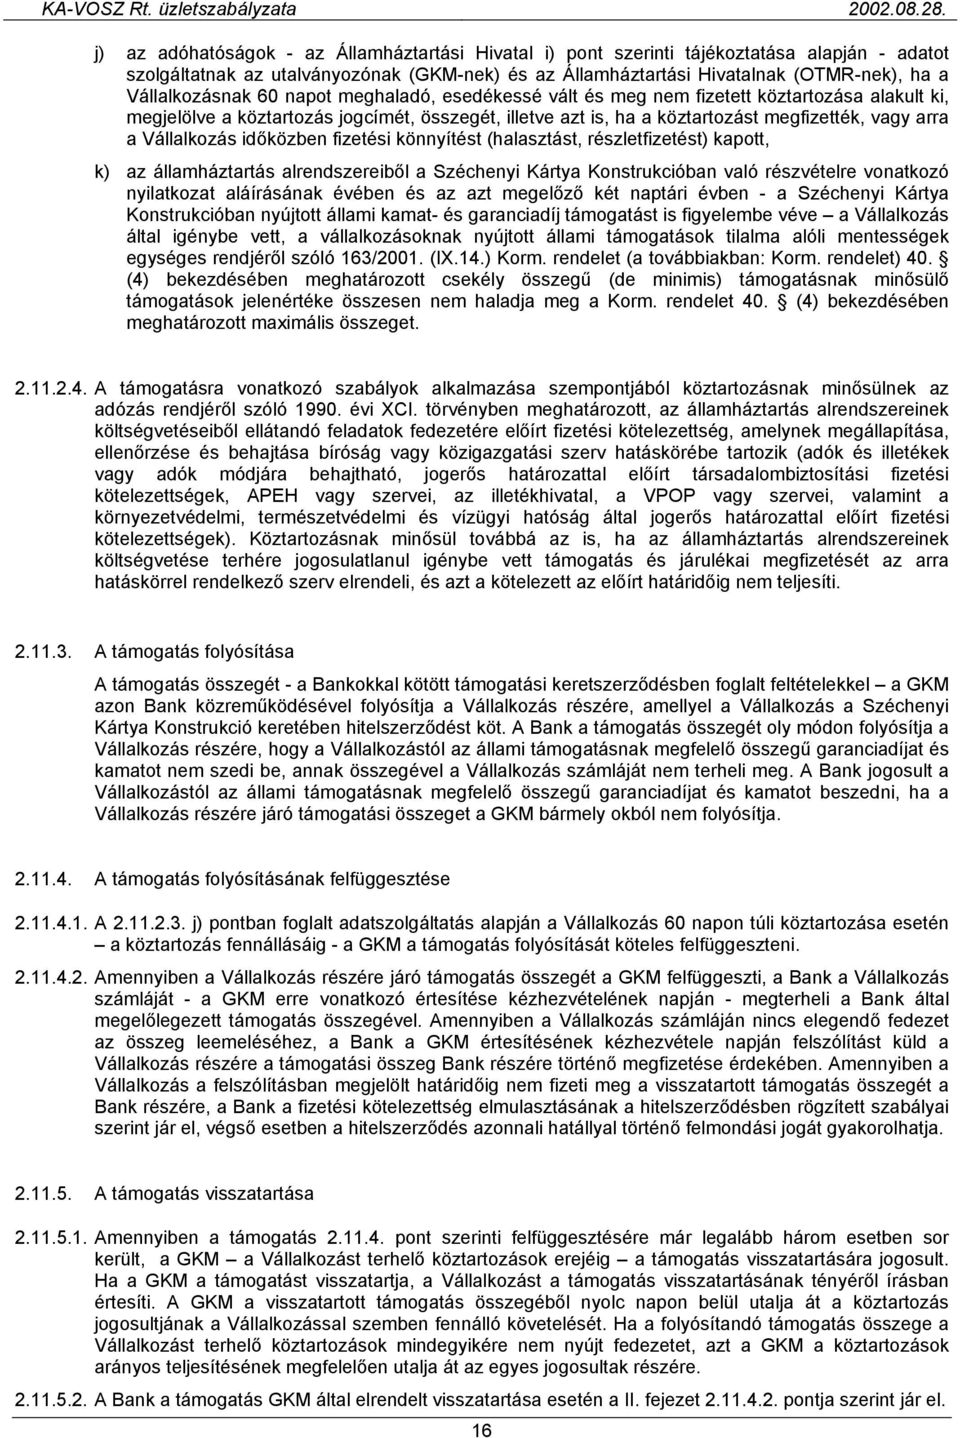 Vállalkozás időközben fizetési könnyítést (halasztást, részletfizetést) kapott, k) az államháztartás alrendszereiből a Széchenyi Kártya Konstrukcióban való részvételre vonatkozó nyilatkozat